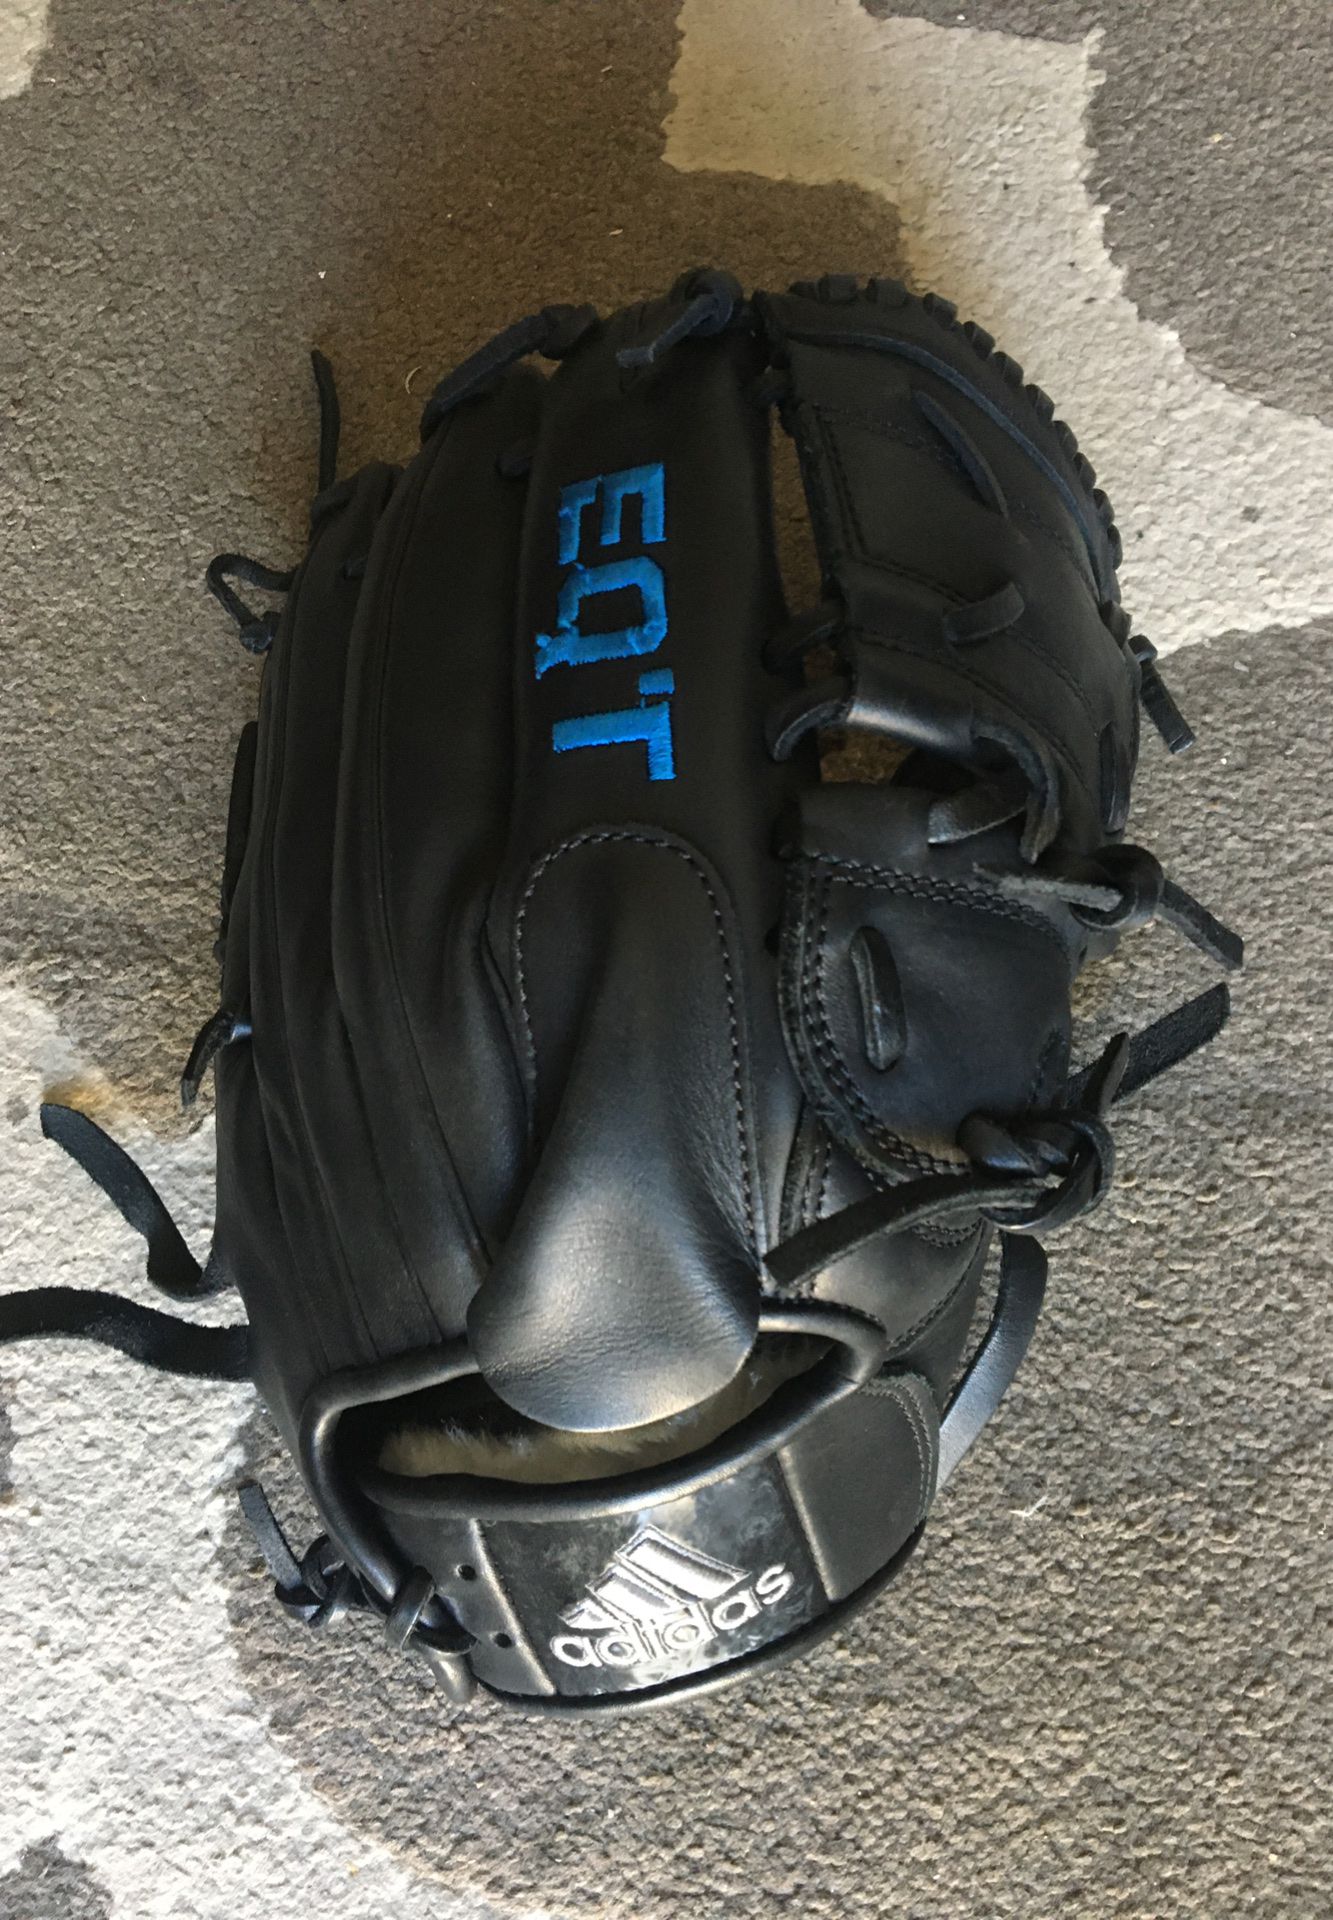 Adidas EQ’T pitchers baseball glove size 12”